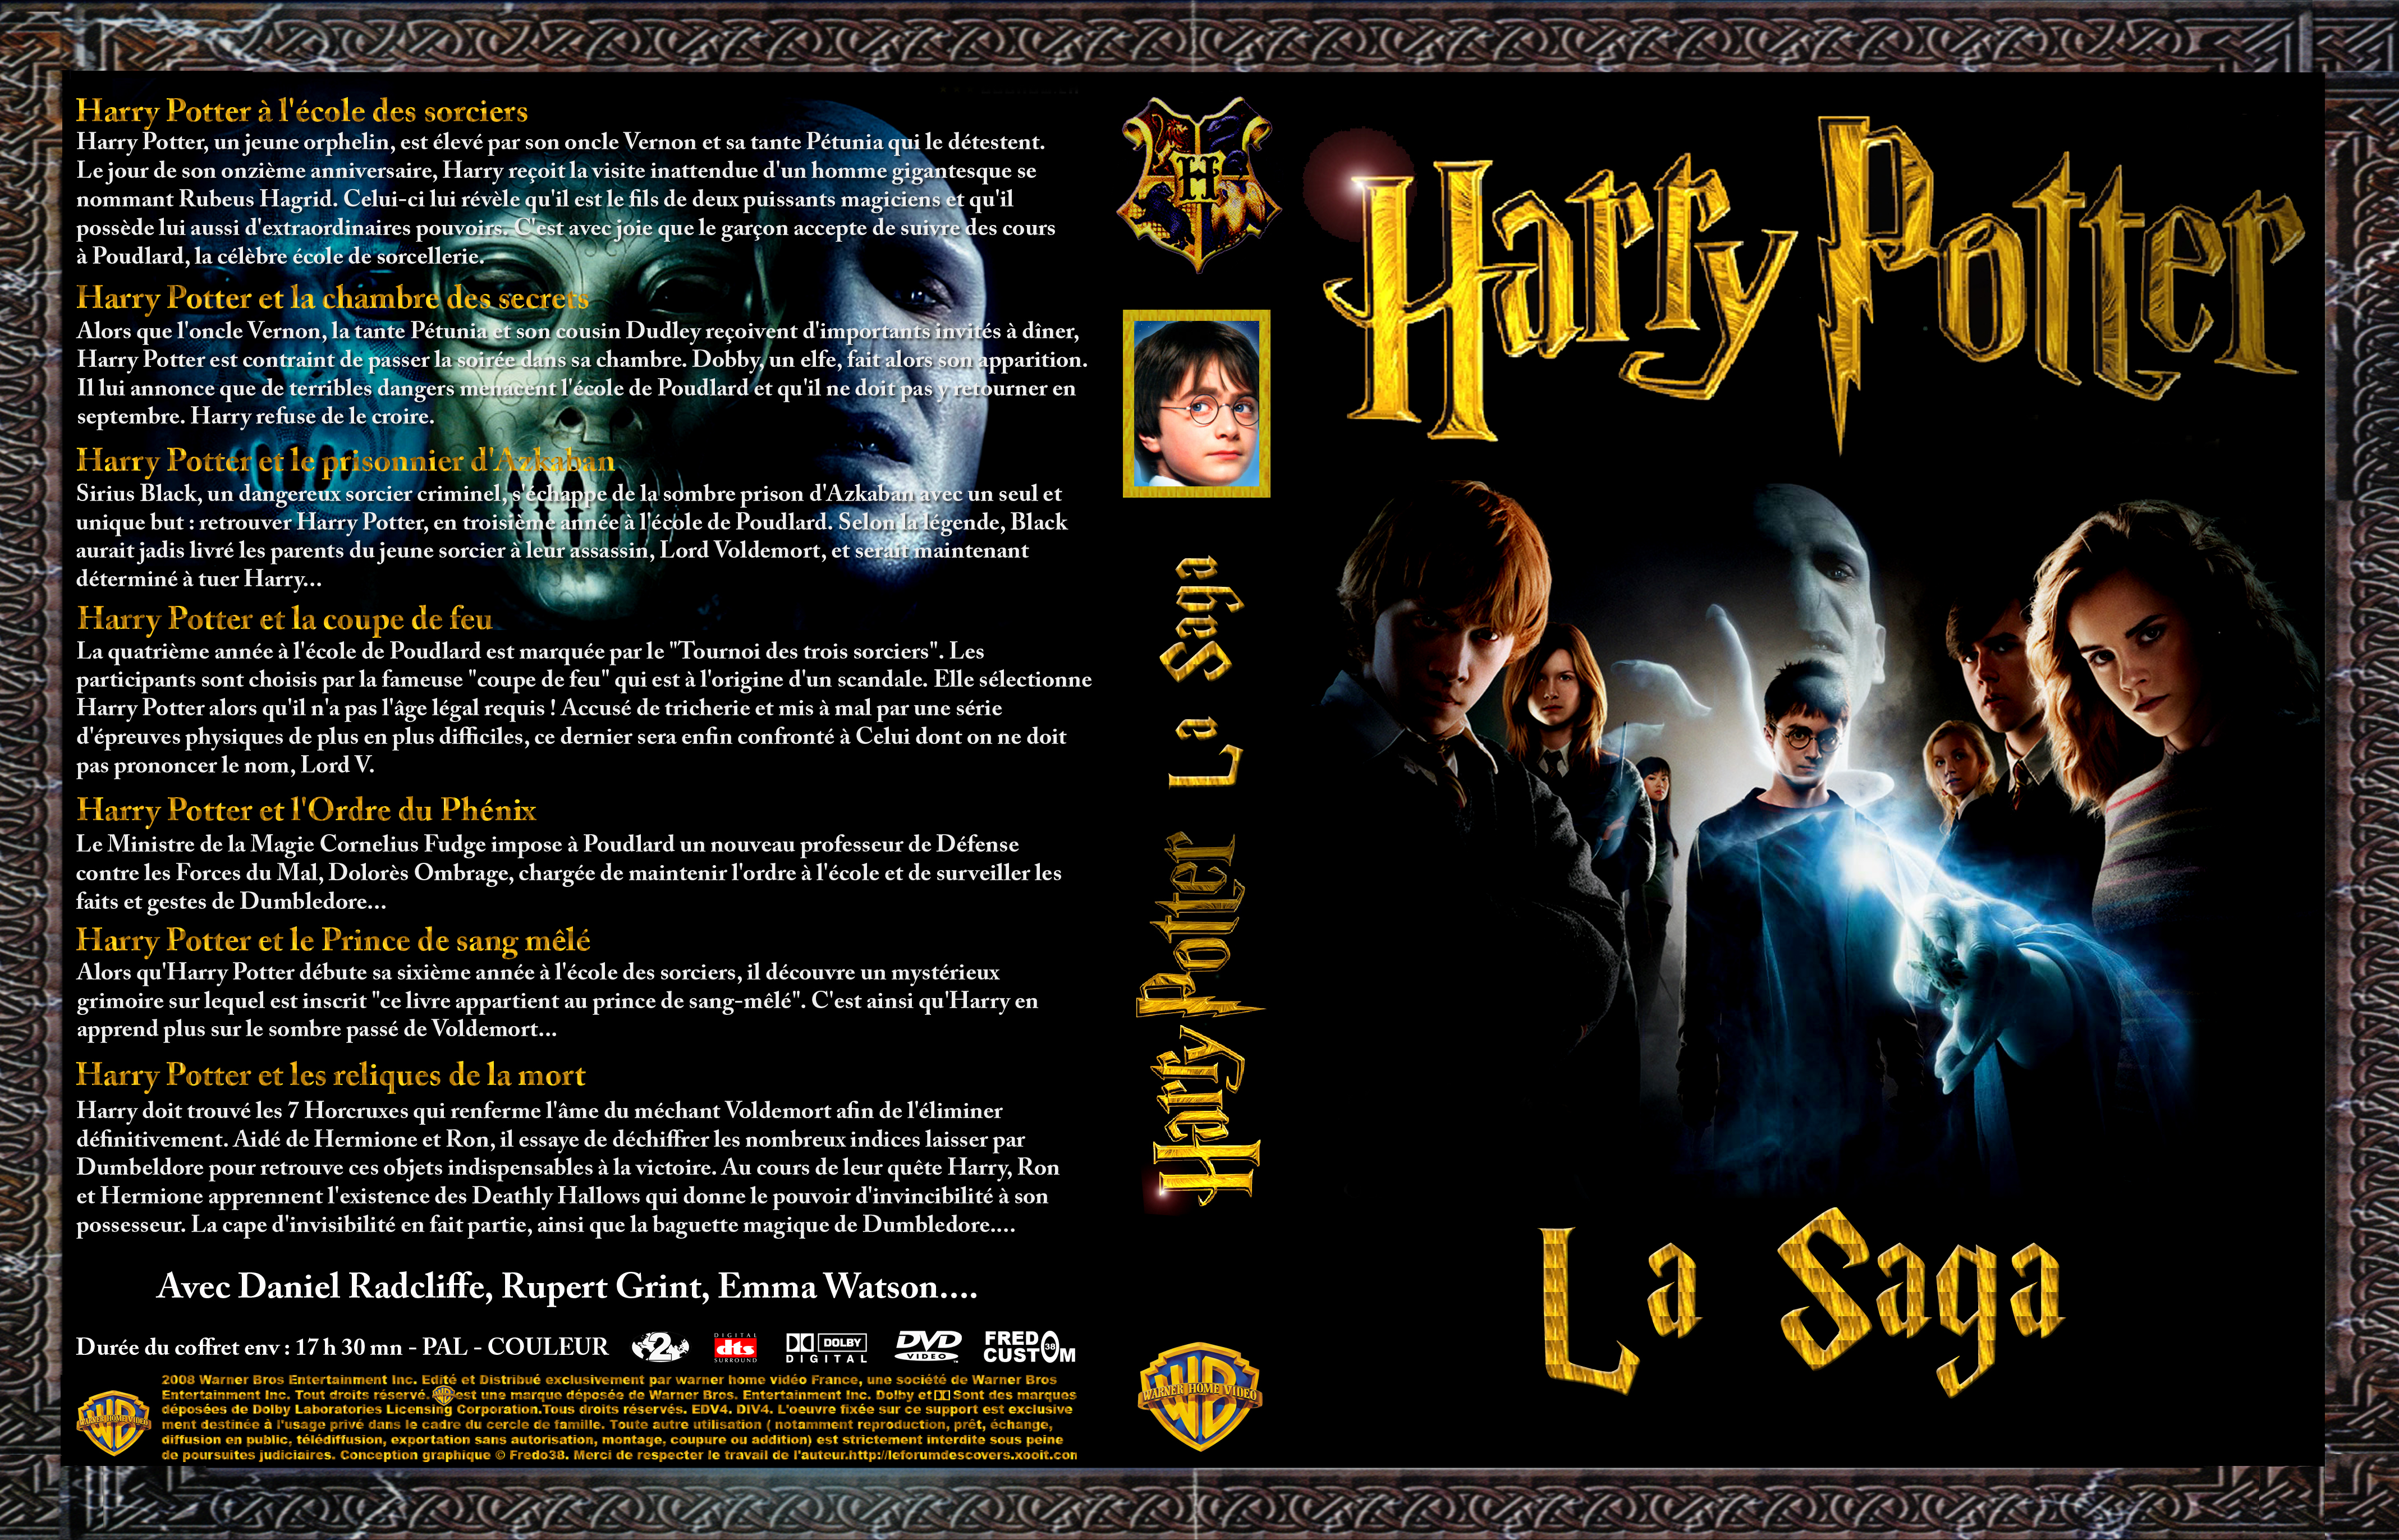 Jaquette DVD de Harry Potter Intégrale custom - Cinéma Passion